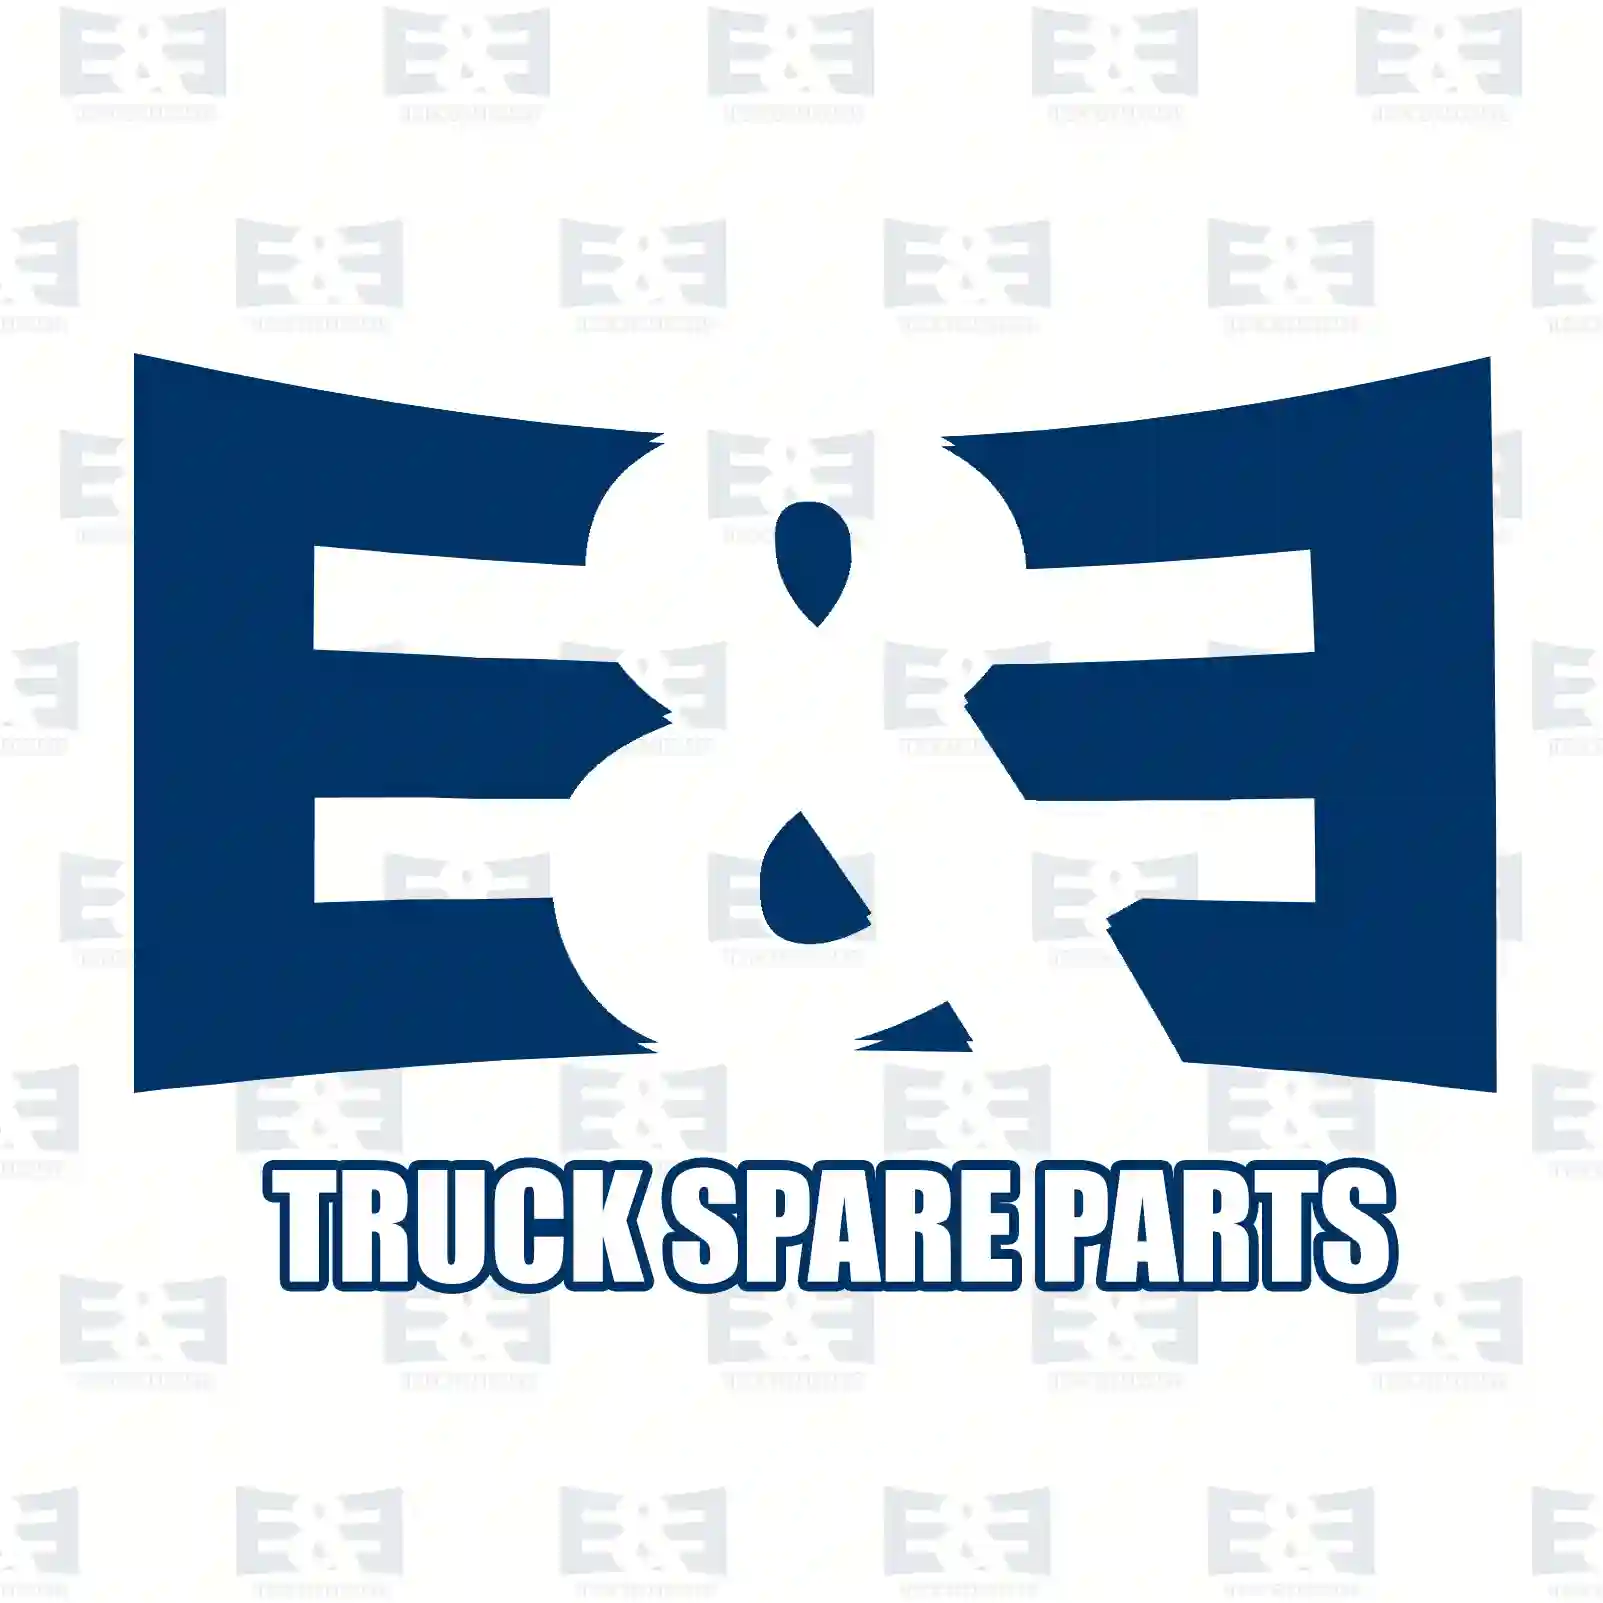 Brake disc, 2E2296334, 6384230112, , , , , , , , , ||  2E2296334 E&E Truck Spare Parts | Truck Spare Parts, Auotomotive Spare Parts Brake disc, 2E2296334, 6384230112, , , , , , , , , ||  2E2296334 E&E Truck Spare Parts | Truck Spare Parts, Auotomotive Spare Parts